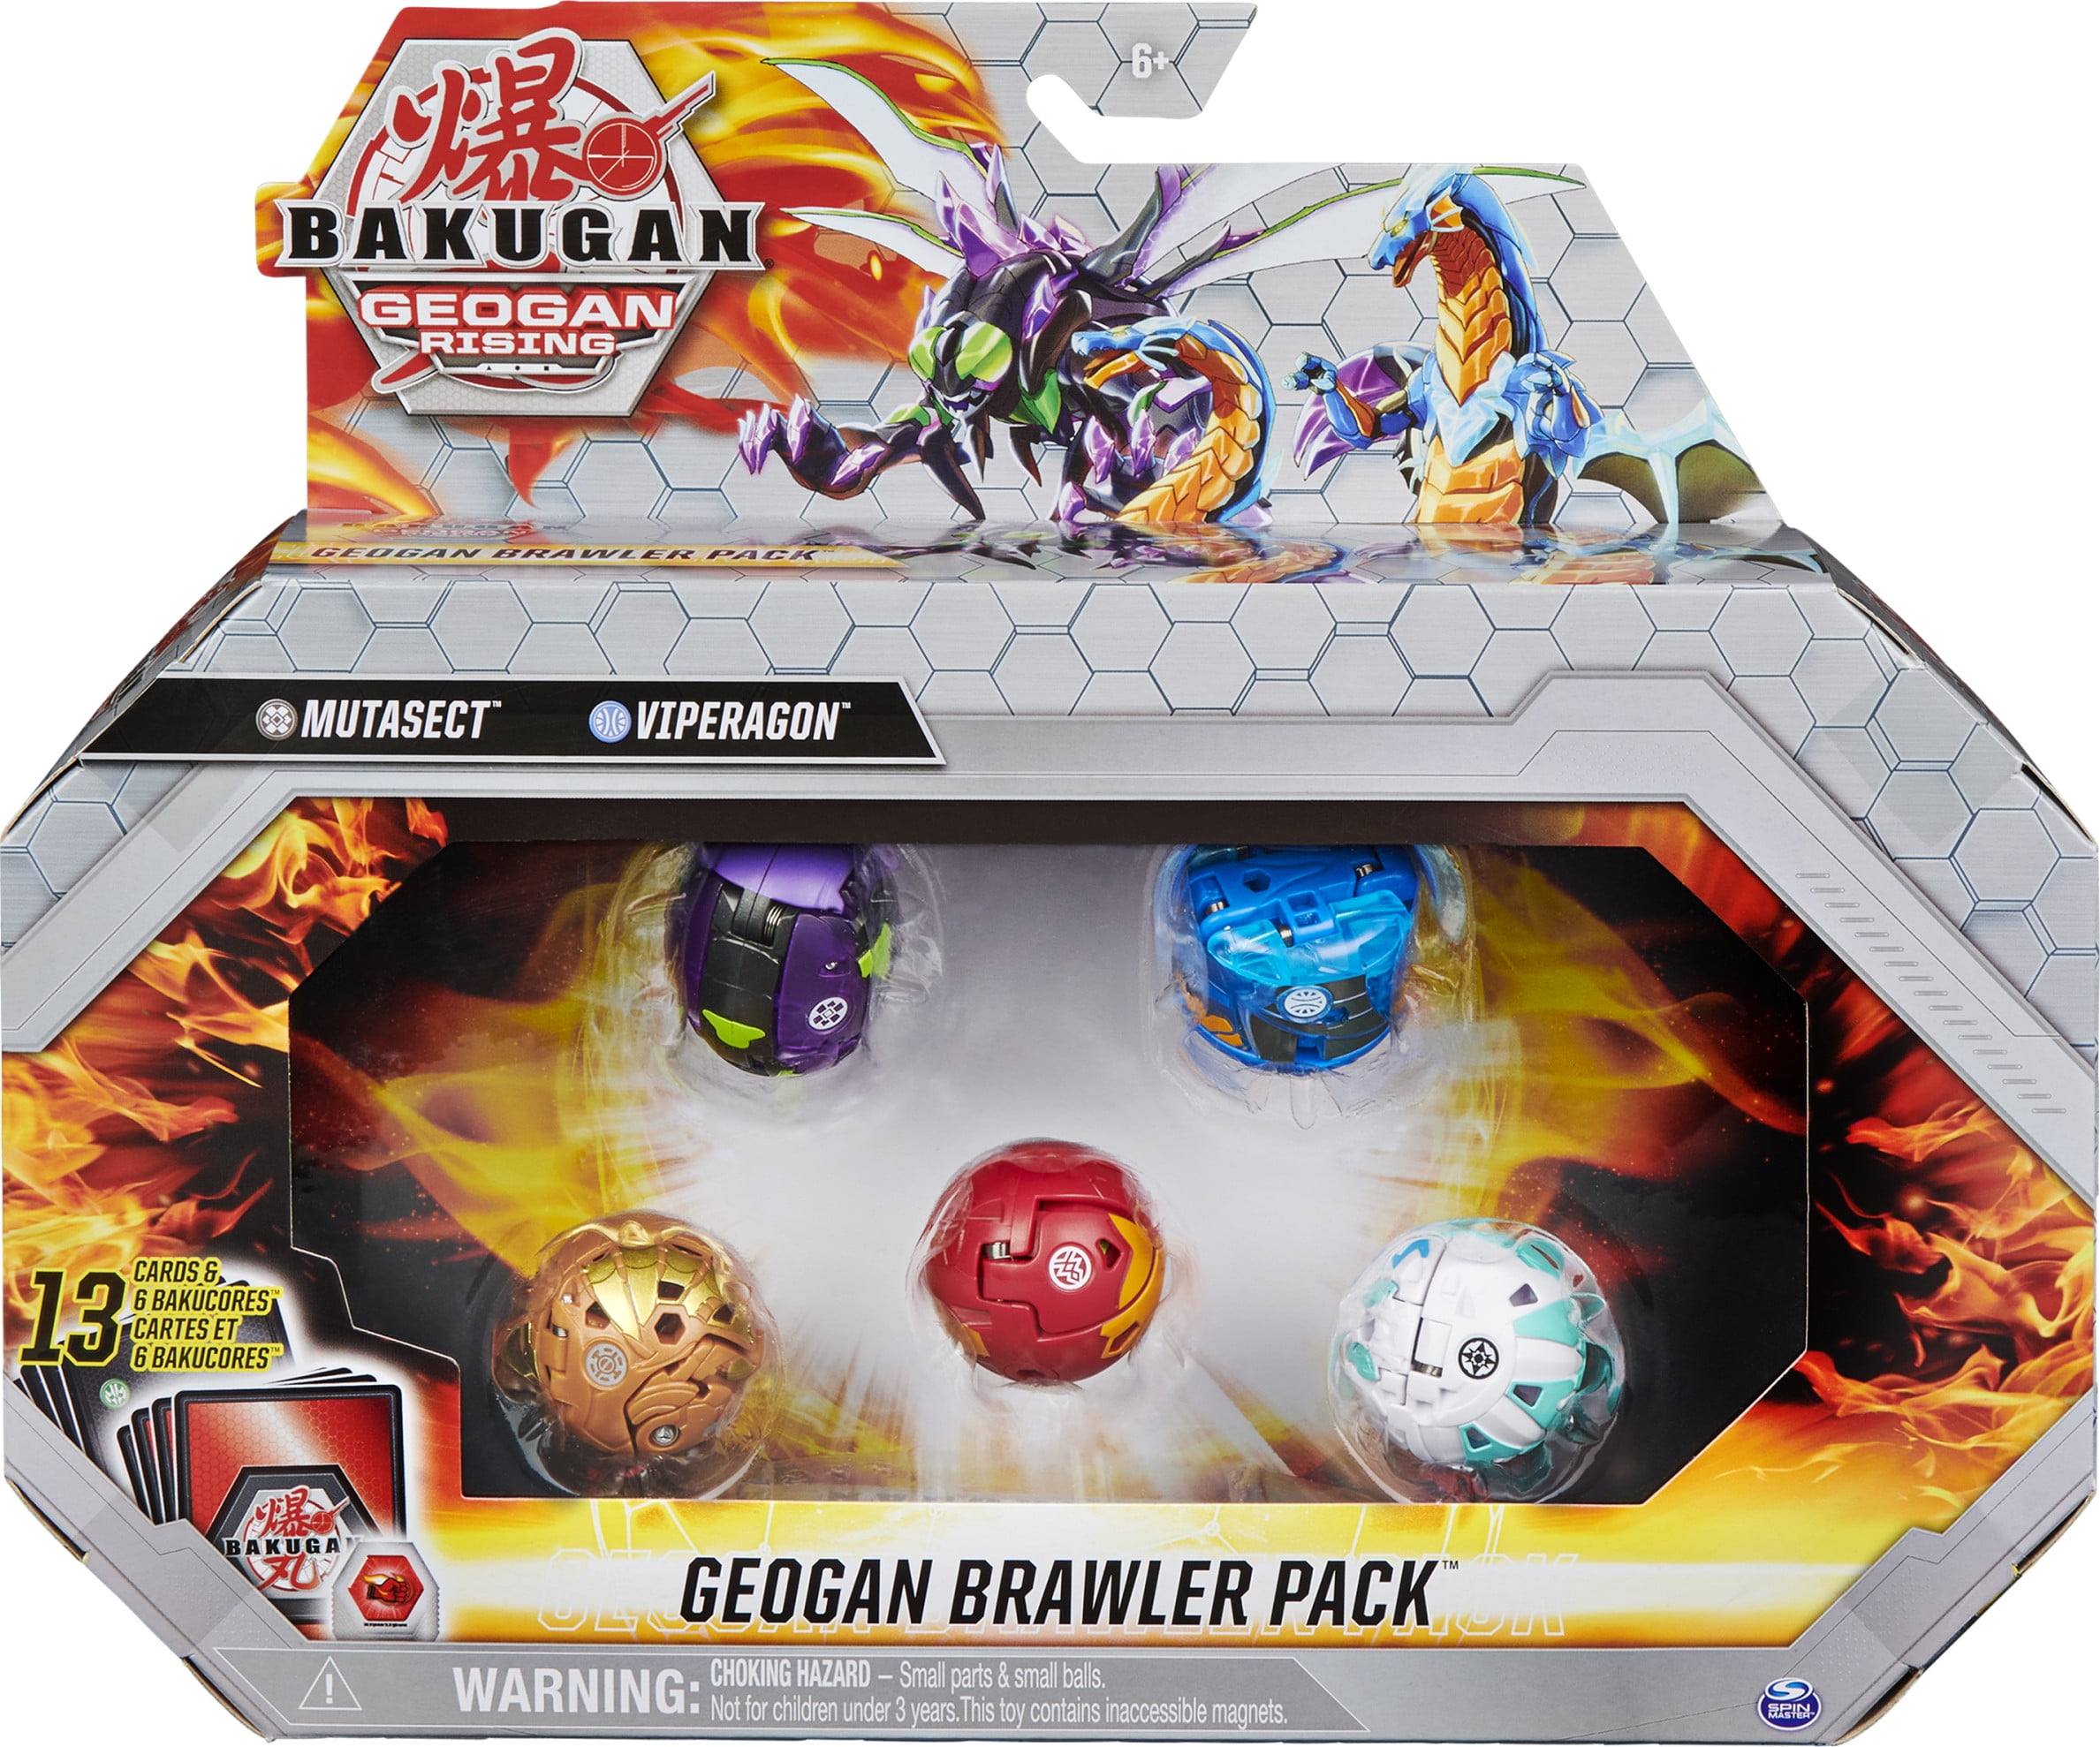 Bakugan Geogan Rising Brawler 5 Pack Mutasect Viperagon Dragonoid Spielzeug 